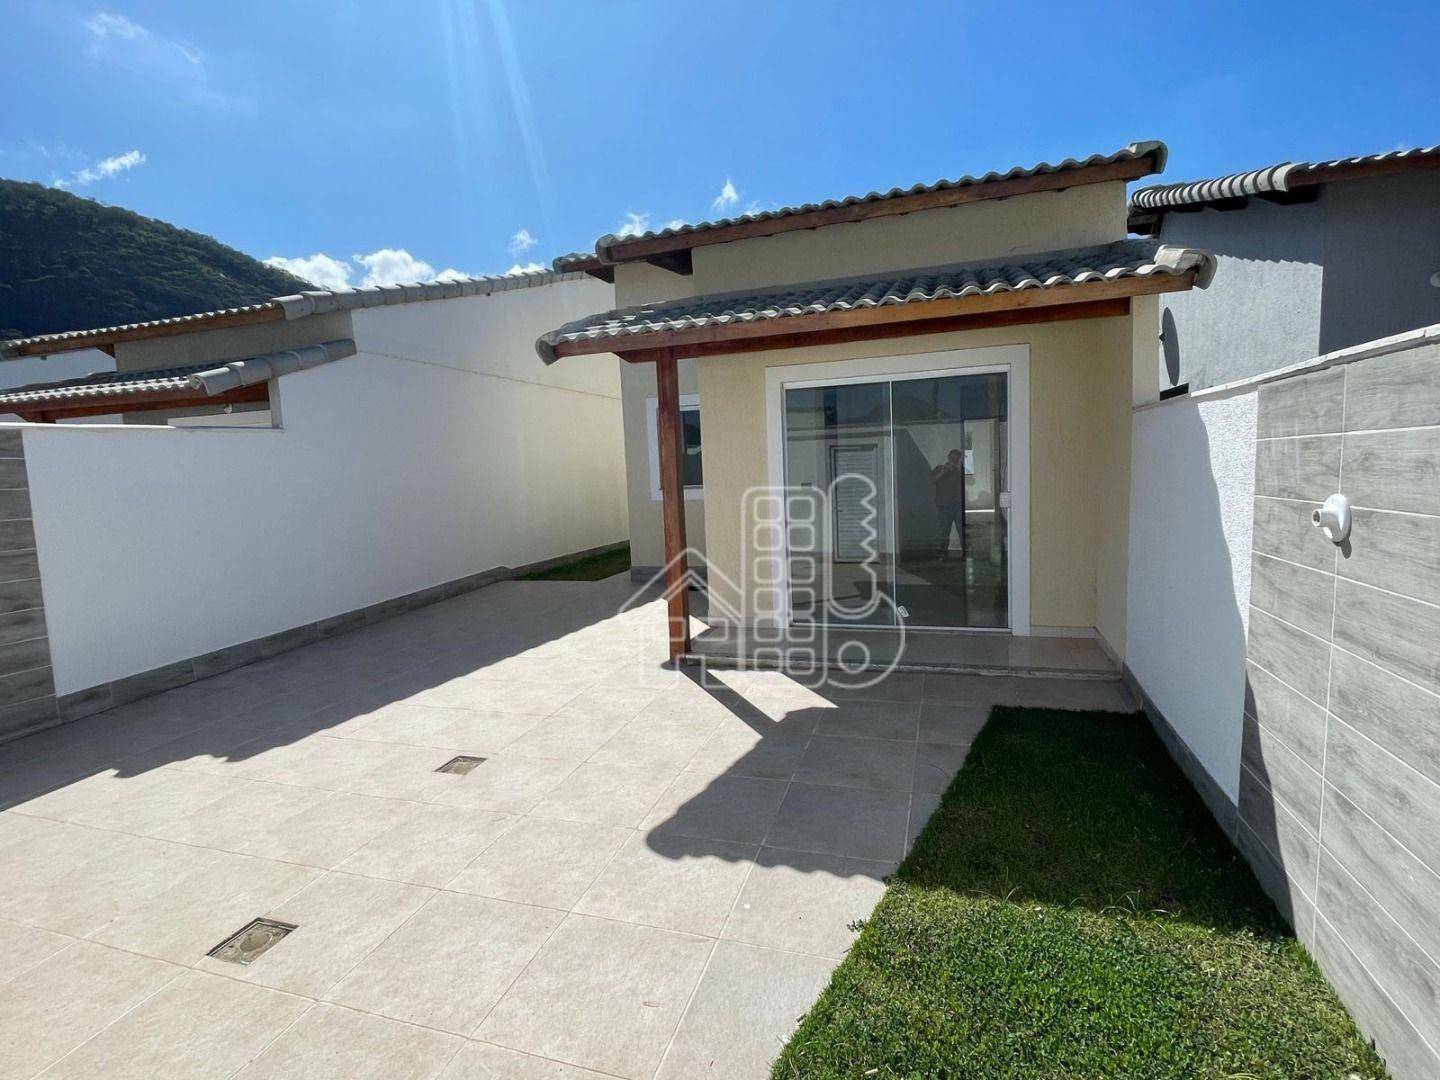 Casa com 2 dormitórios à venda, 78 m² por R$ 410.000,00 - Barroco (Itaipuaçu) - Maricá/RJ